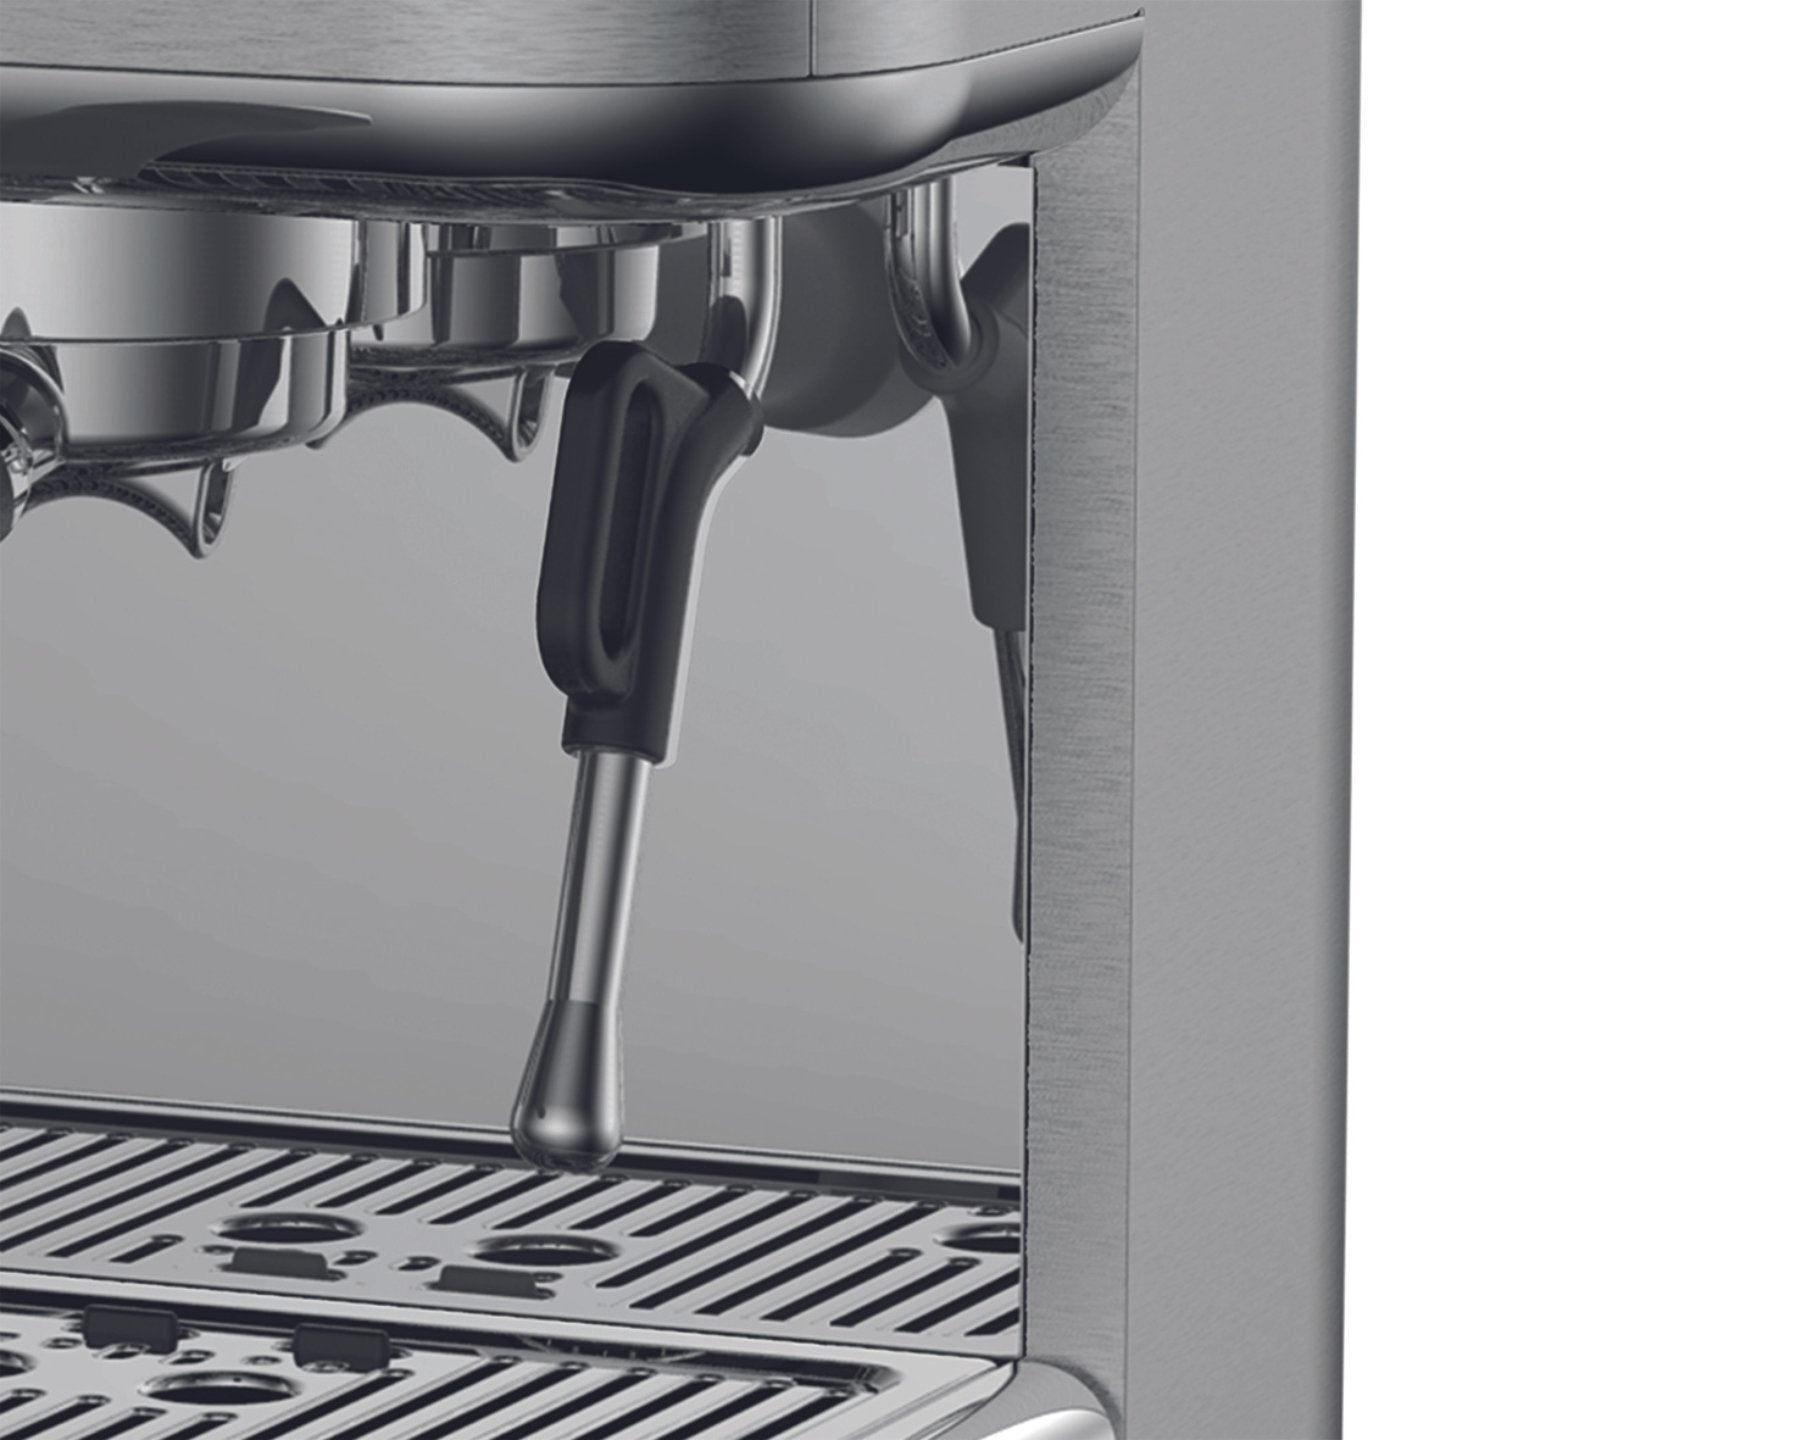 Espressomaschine Baressa mit Mahlwerk von KOENIG Reinigungsbürste- kitchen-more.ch, kostenloser Versand in der ganzen Schweiz